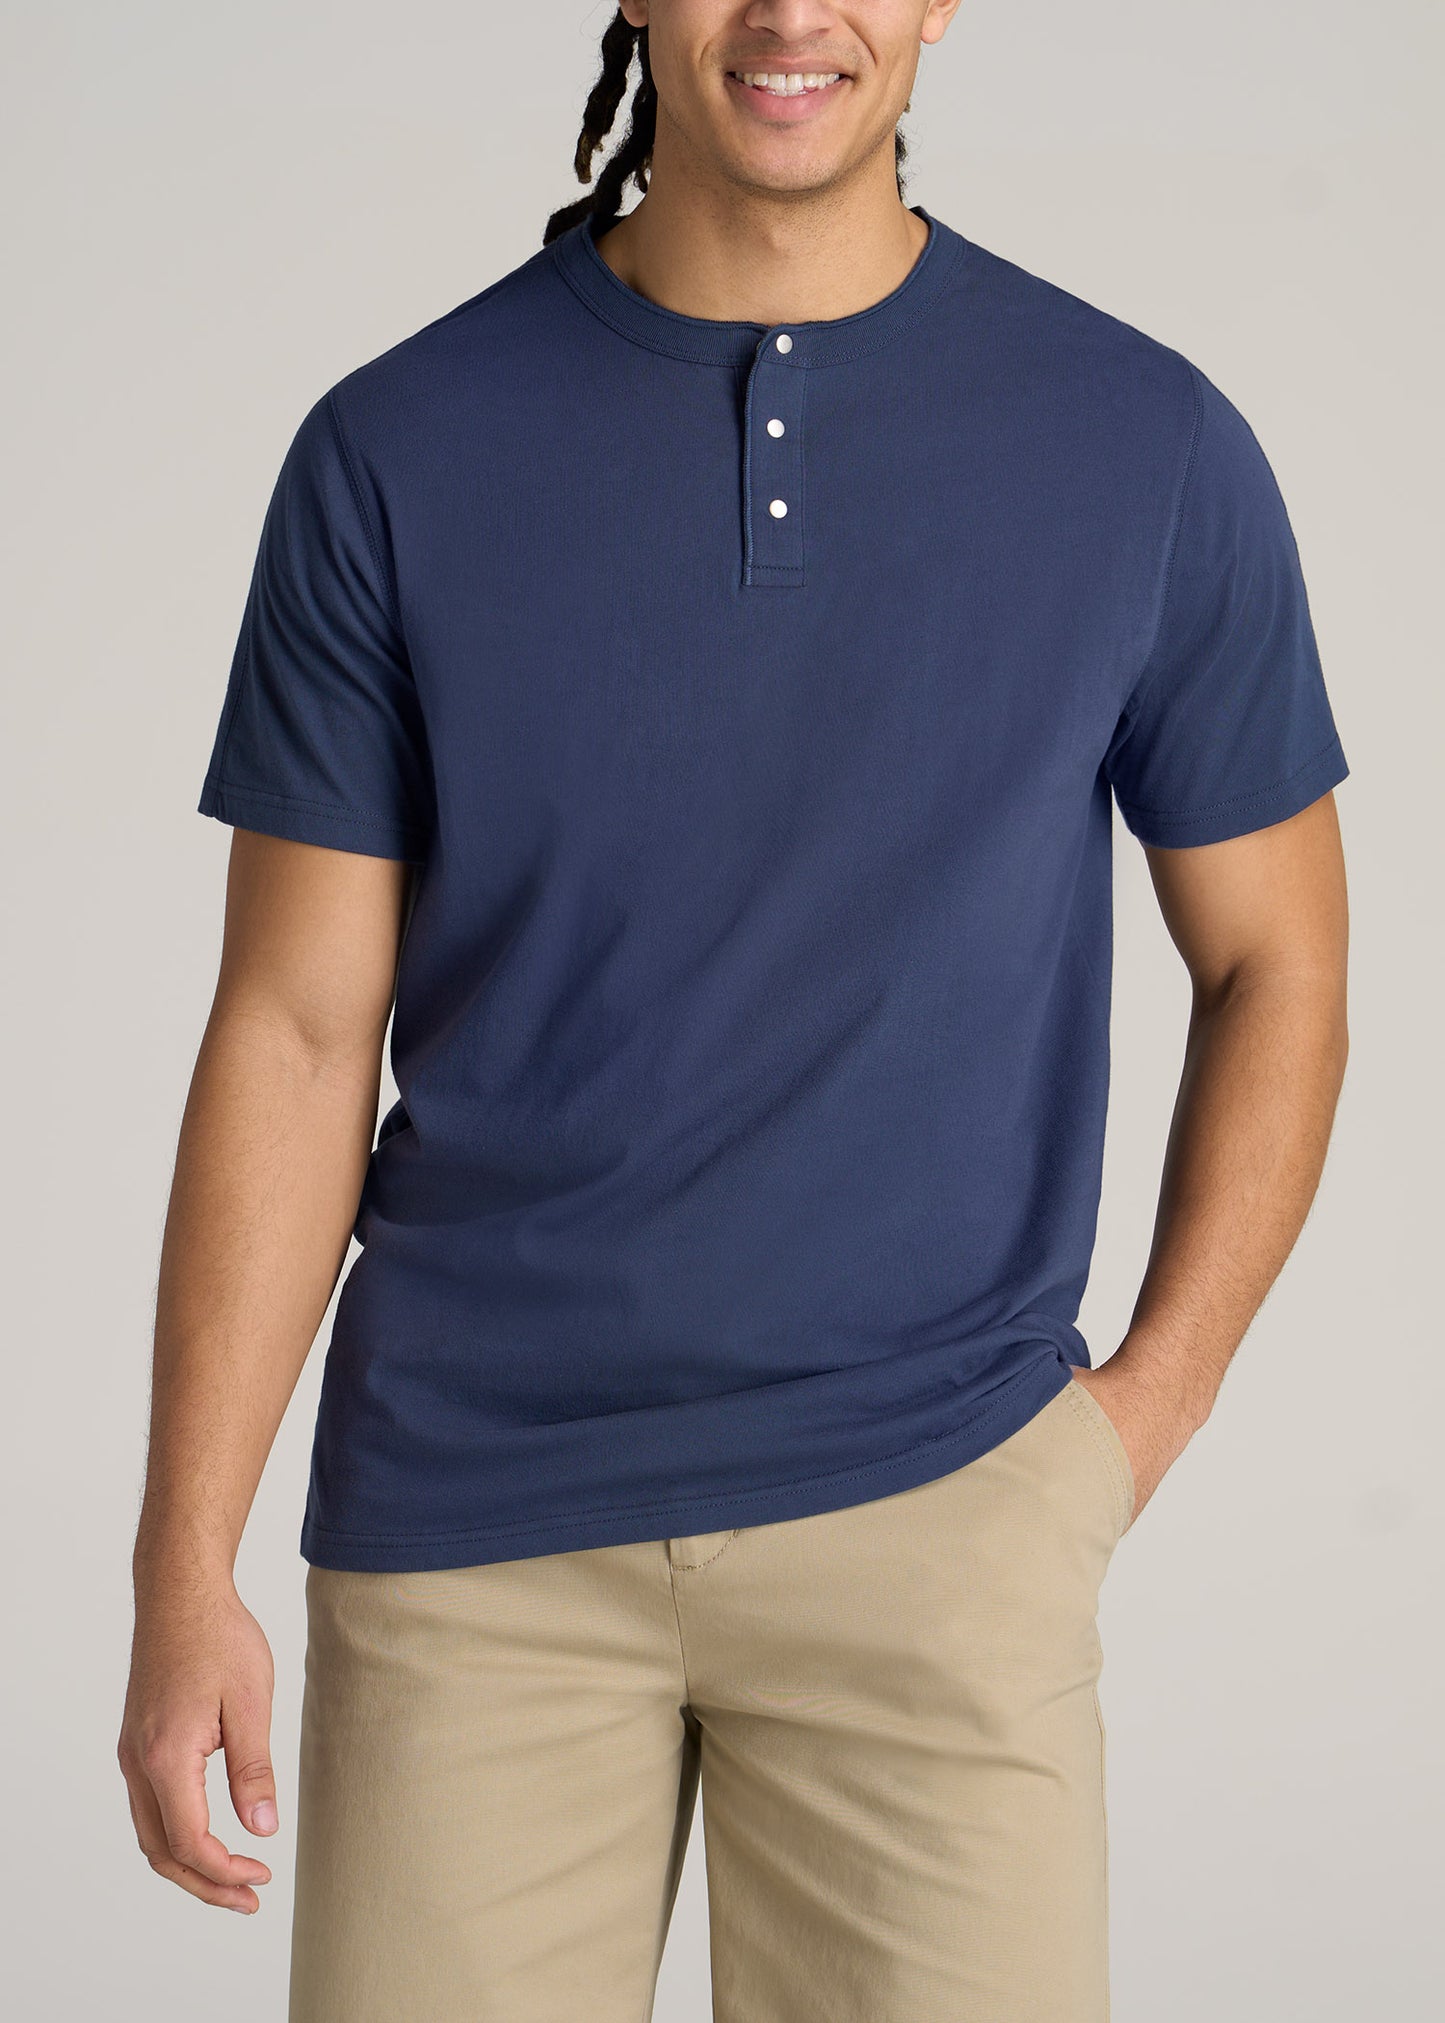 A tall man wearing a regular-fit jersey henley t-shirt in blue.